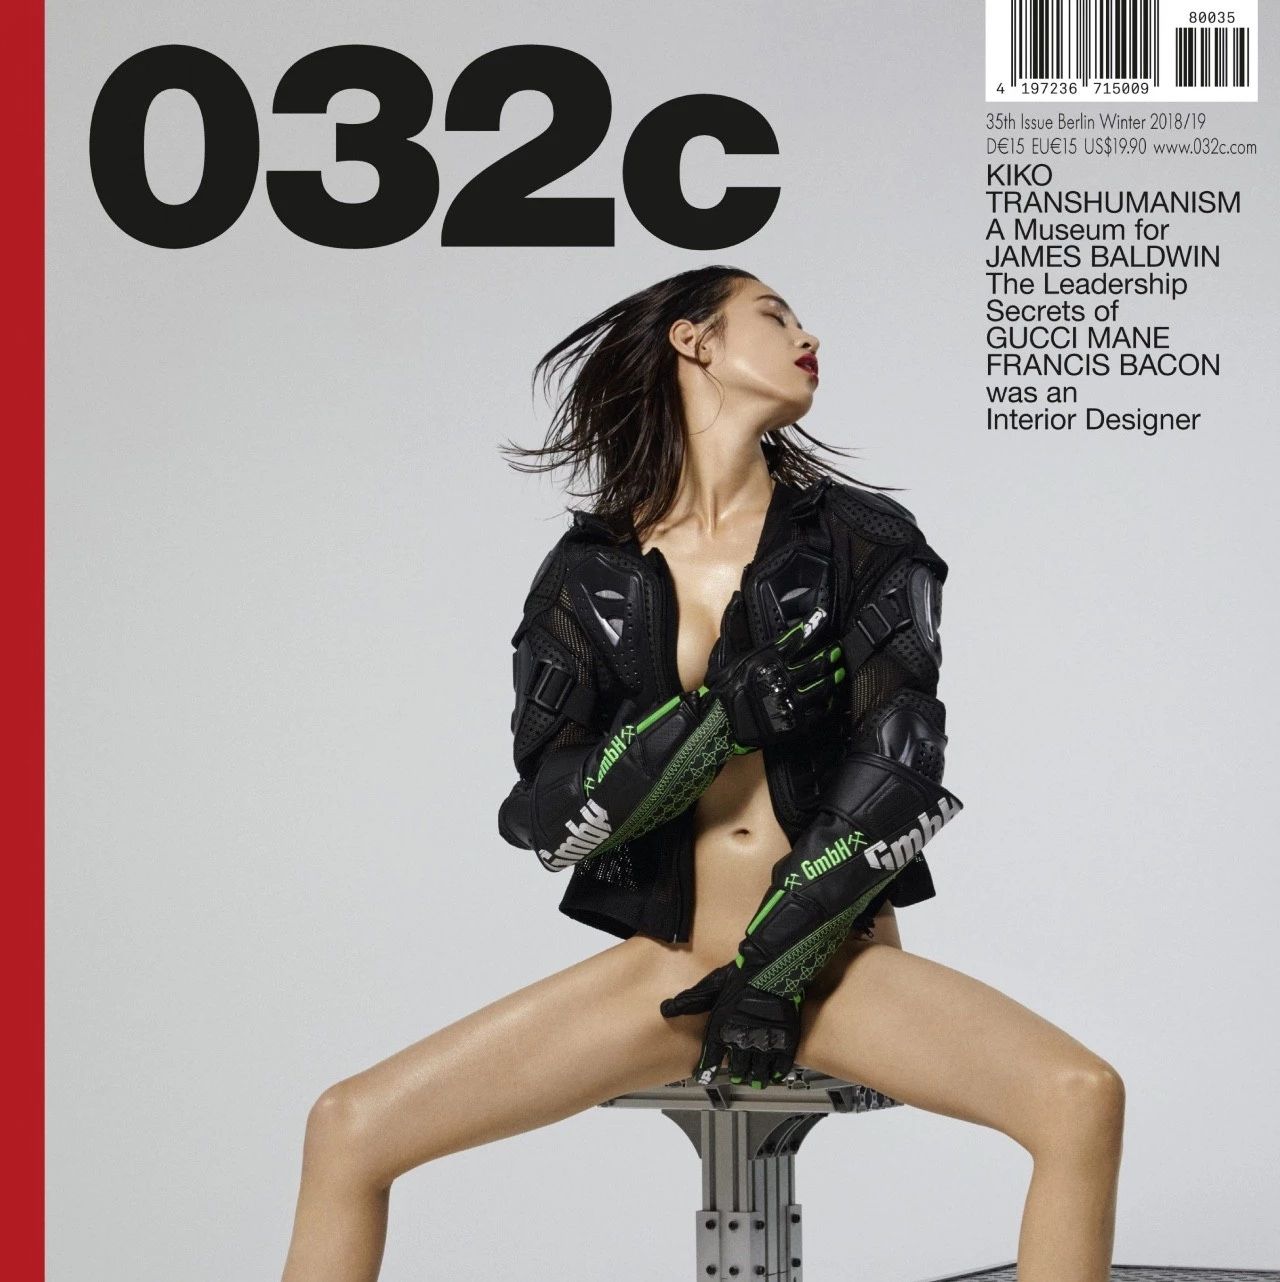 水原希子全裸为032c拍摄杂志封面